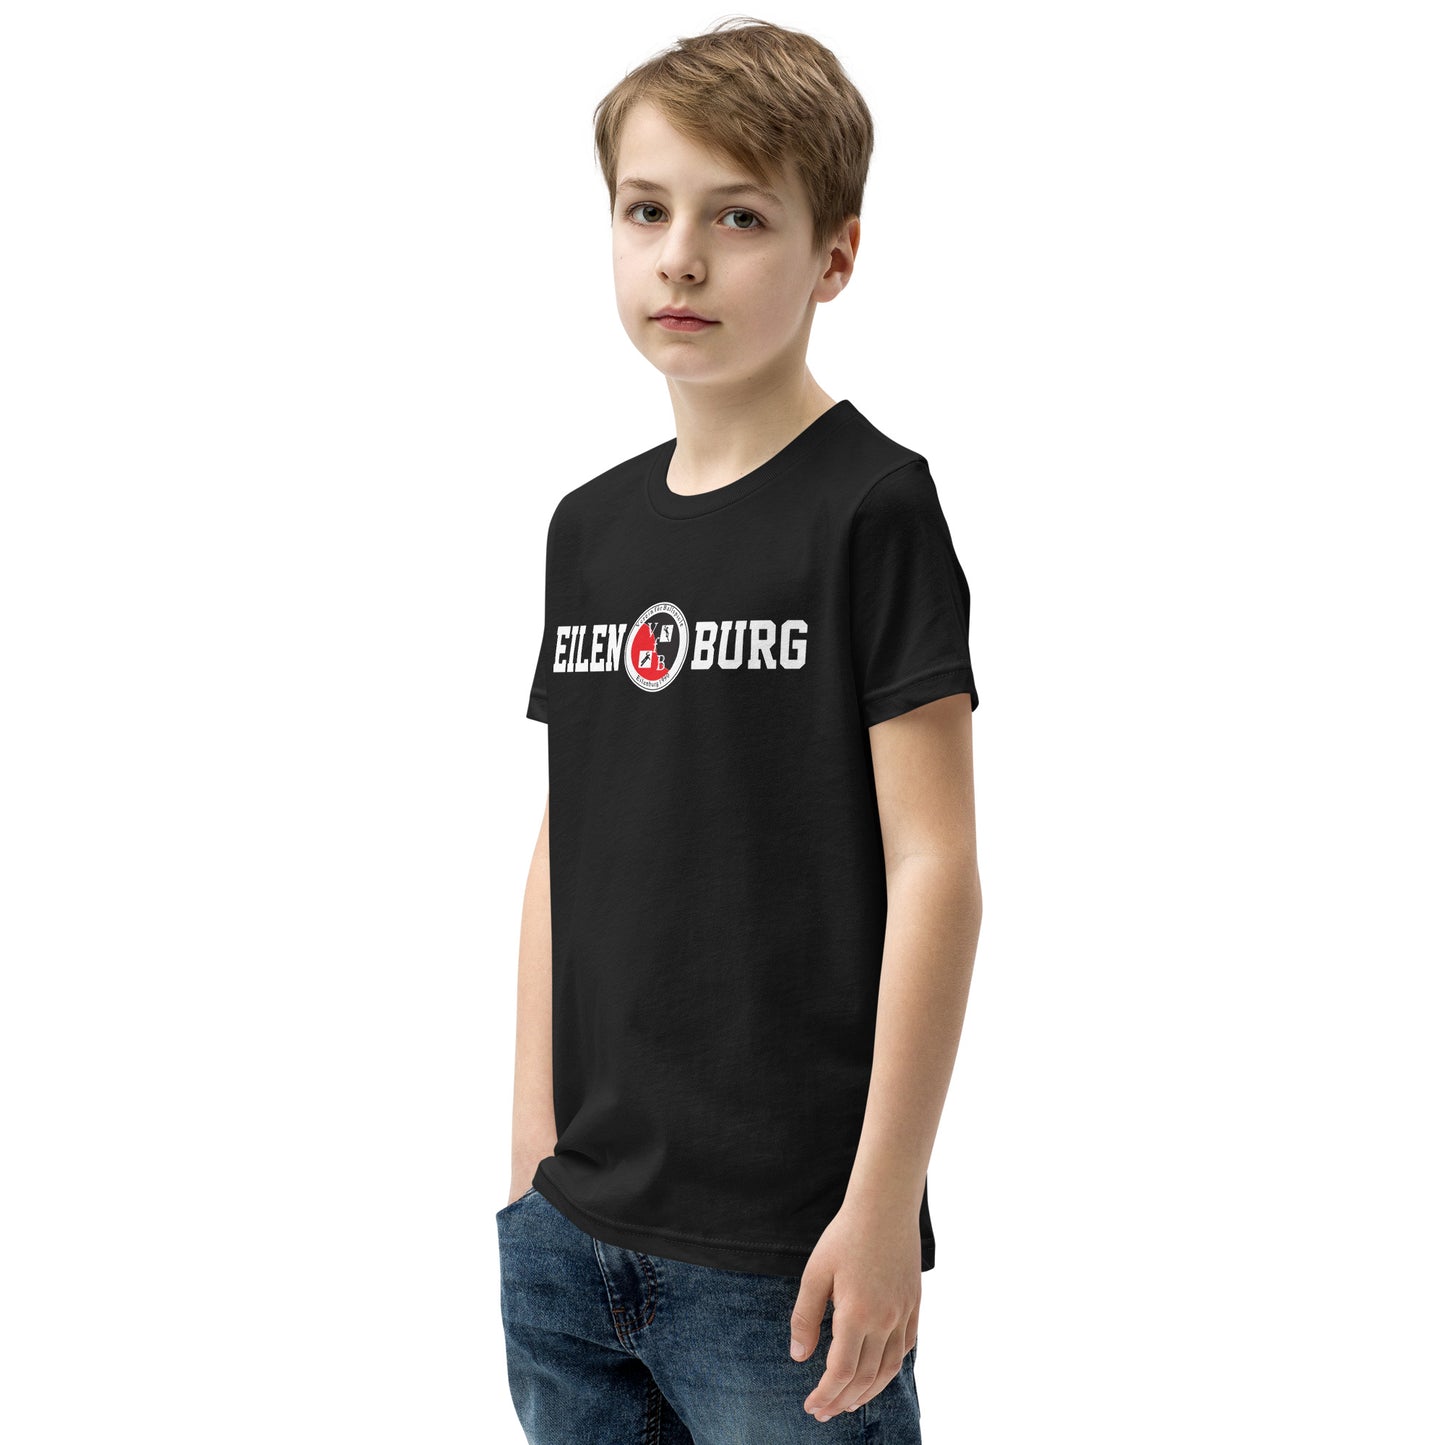 Kinder-Shirt "Eilenburg"